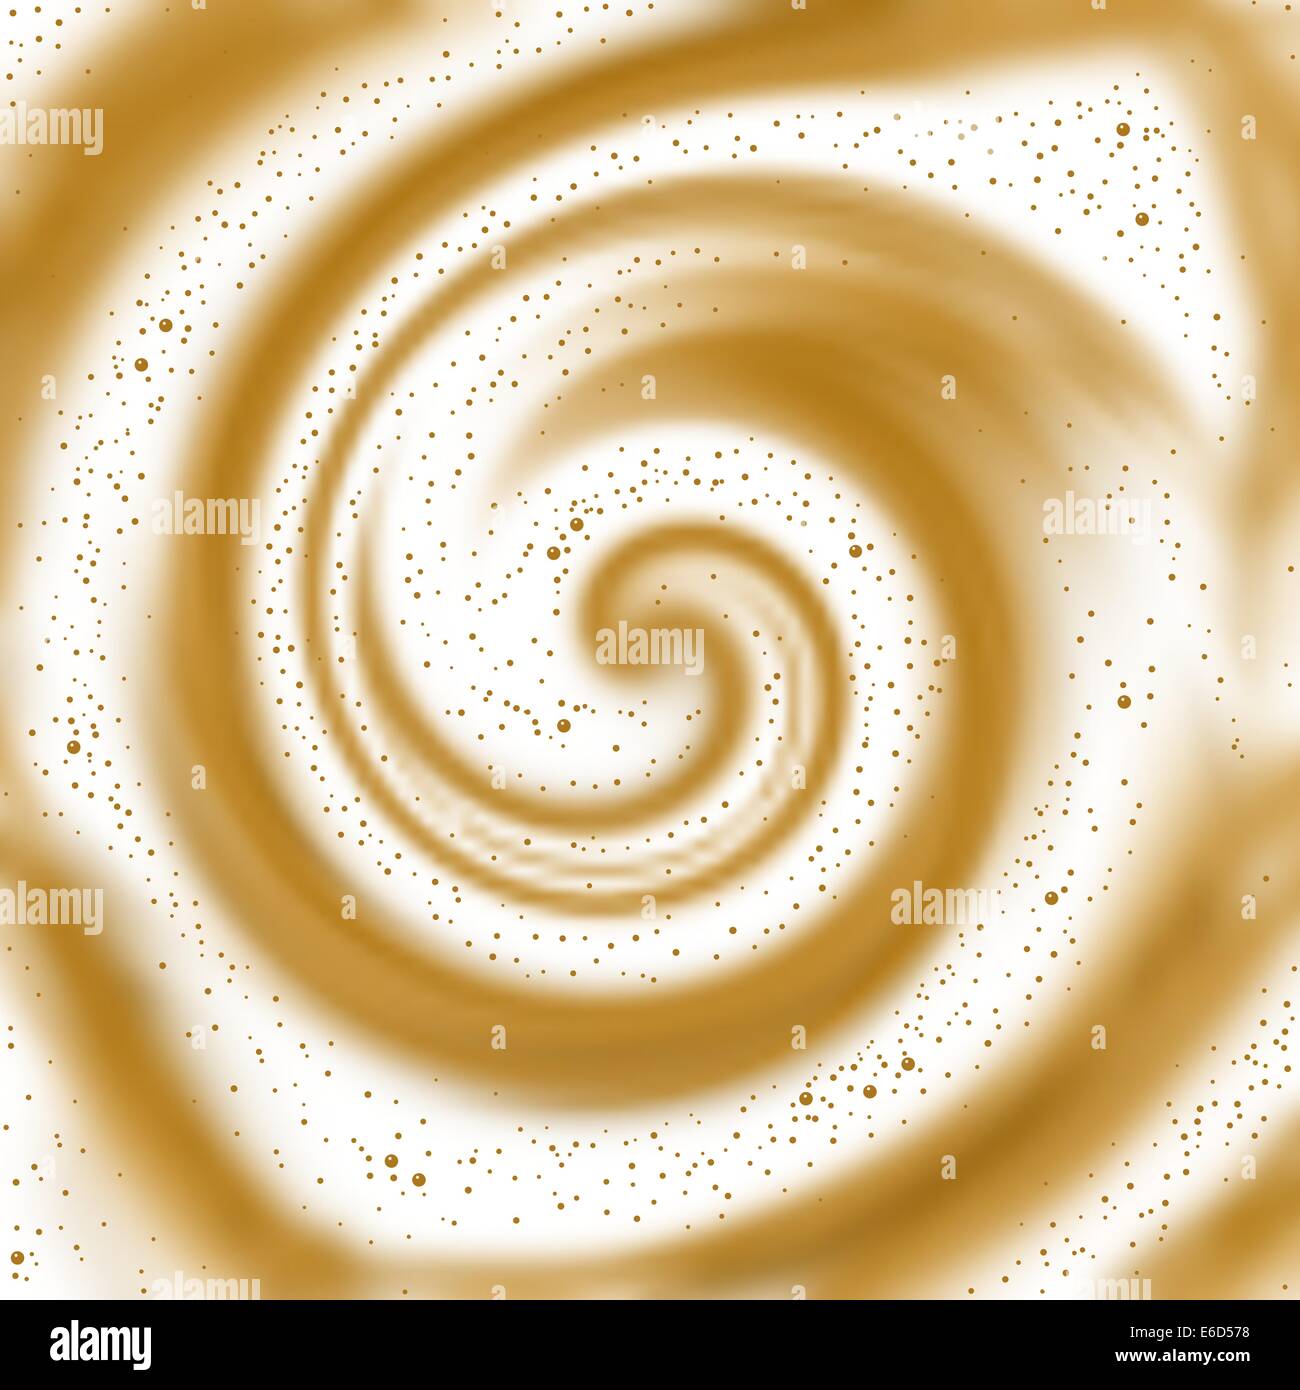 Bearbeitbares Vektor Hintergrund Illustration von swirly Schaum auf Kaffee, zubereitet mit einem Verlaufsgitter Stock Vektor